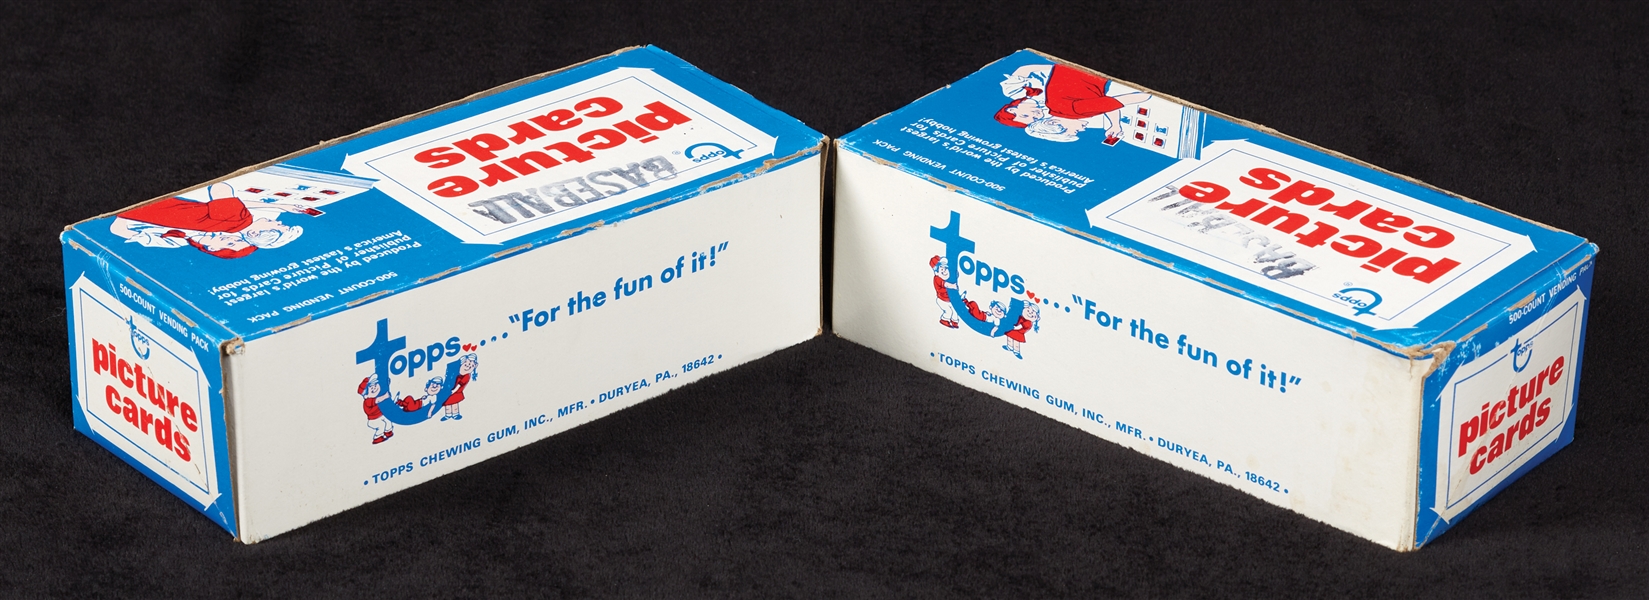 1981 Topps Baseball Vending Boxes Pair (2)